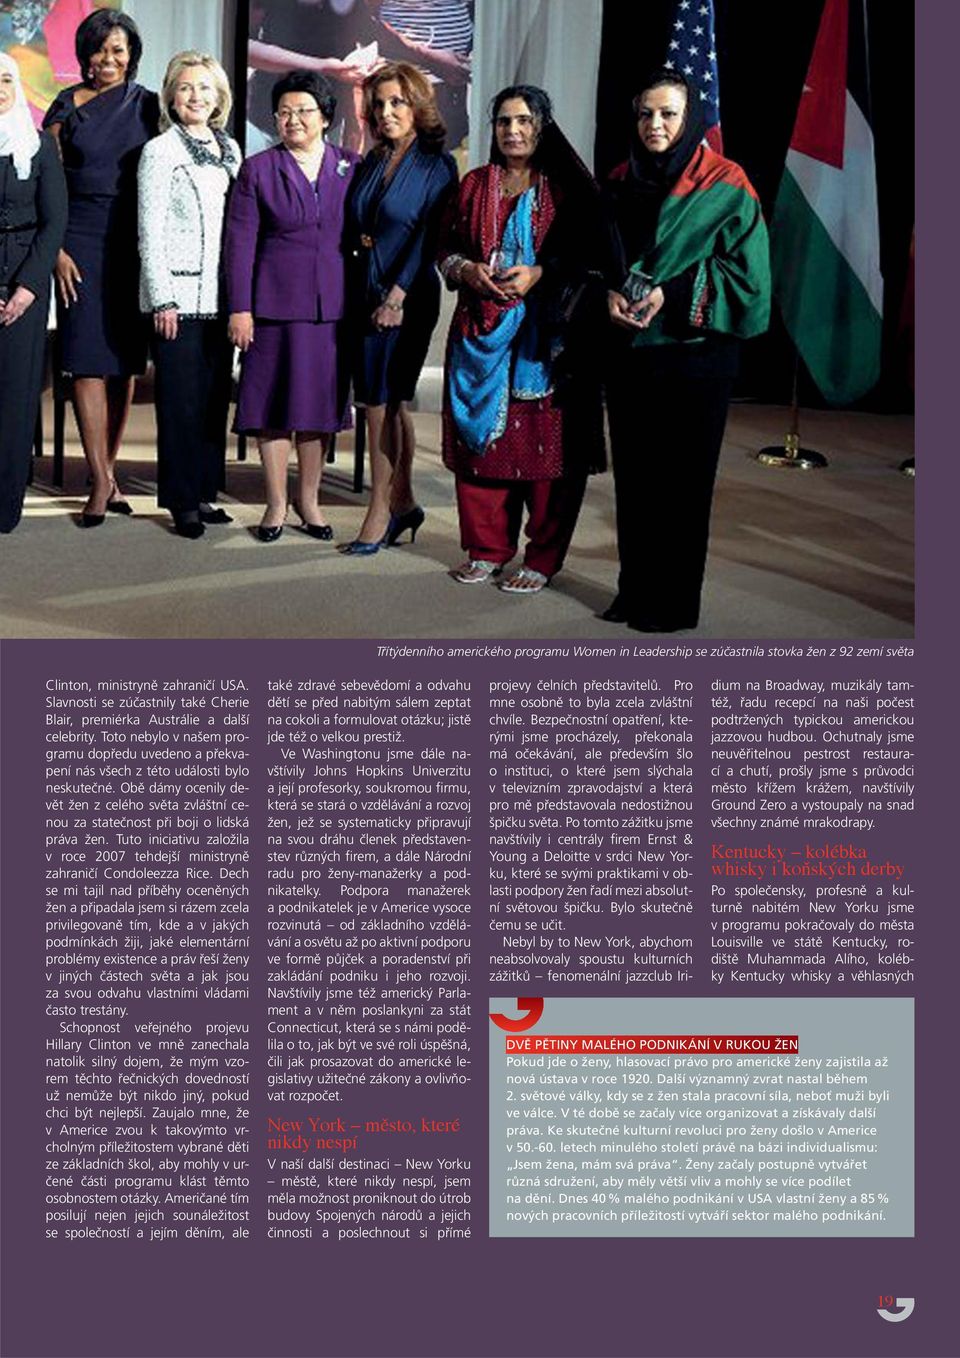 Obě dámy ocenily devět žen z celého světa zvláštní cenou za statečnost při boji o lidská práva žen. Tuto iniciativu založila v roce 2007 tehdejší ministryně zahraničí Condoleezza Rice.